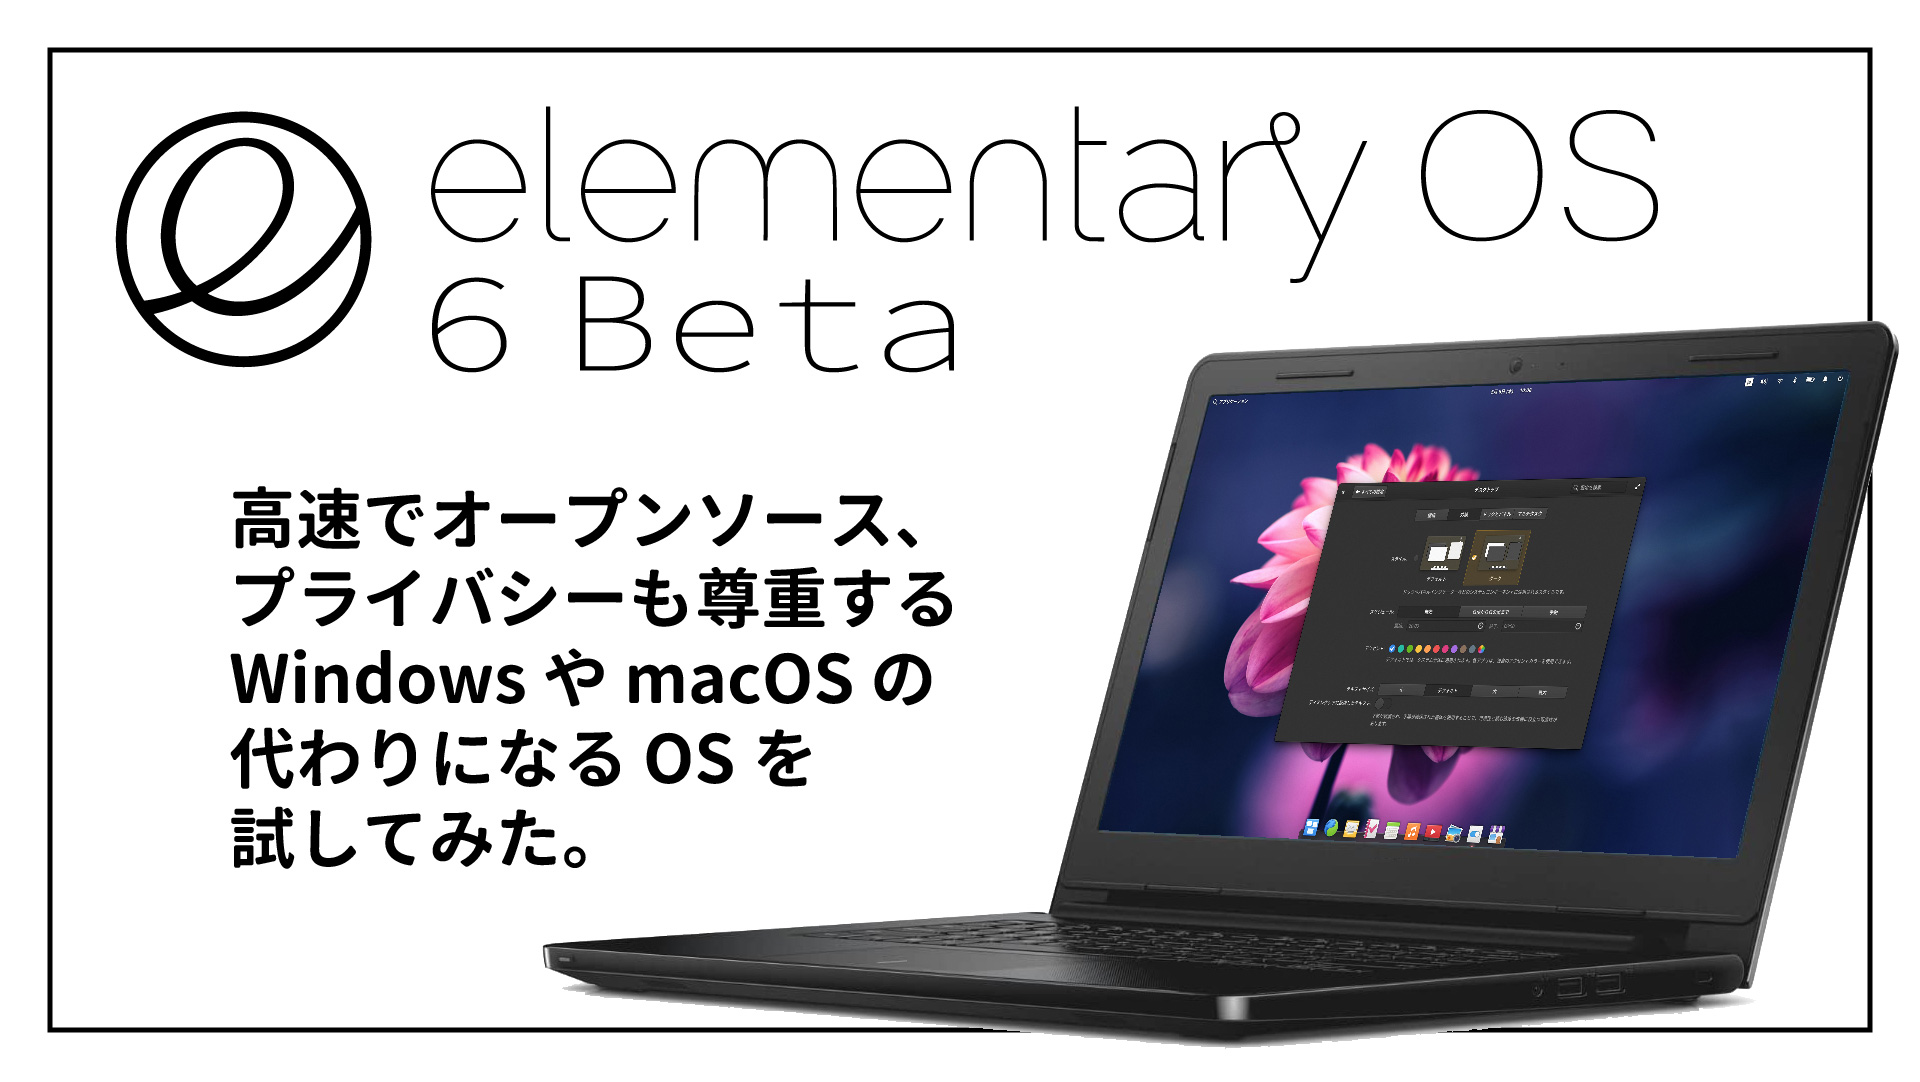 【人気 Linux 最新版】elementary OS 6 beta が登場したので早速試してみました。